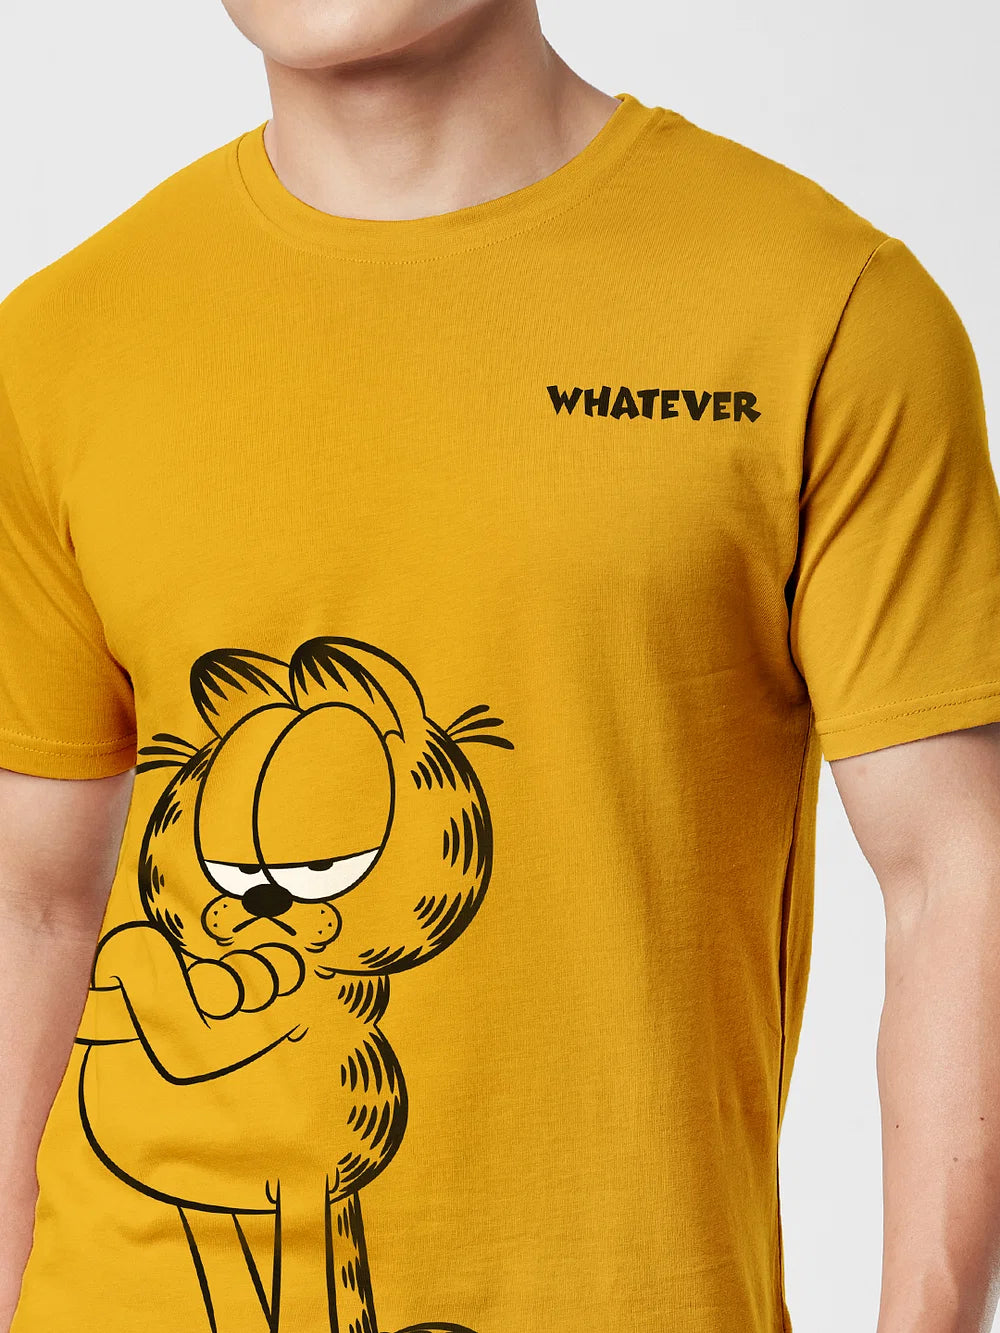 Garfield Whatever (UK version)